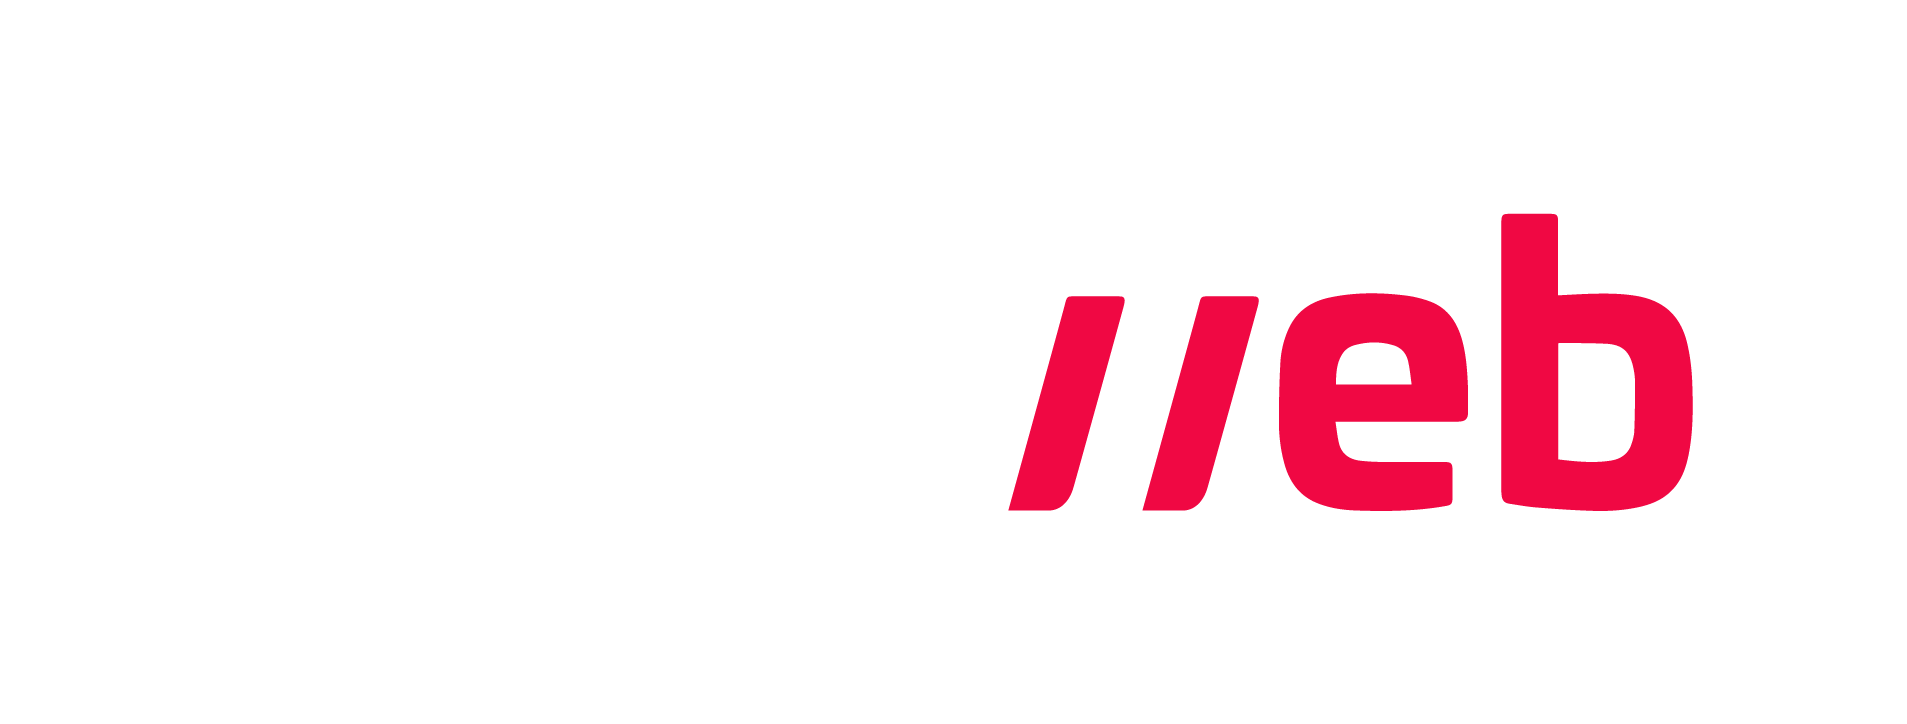 Locaweb Logo - Os melhores artigos sobre lojas Virtuais | Escola de E-commerce